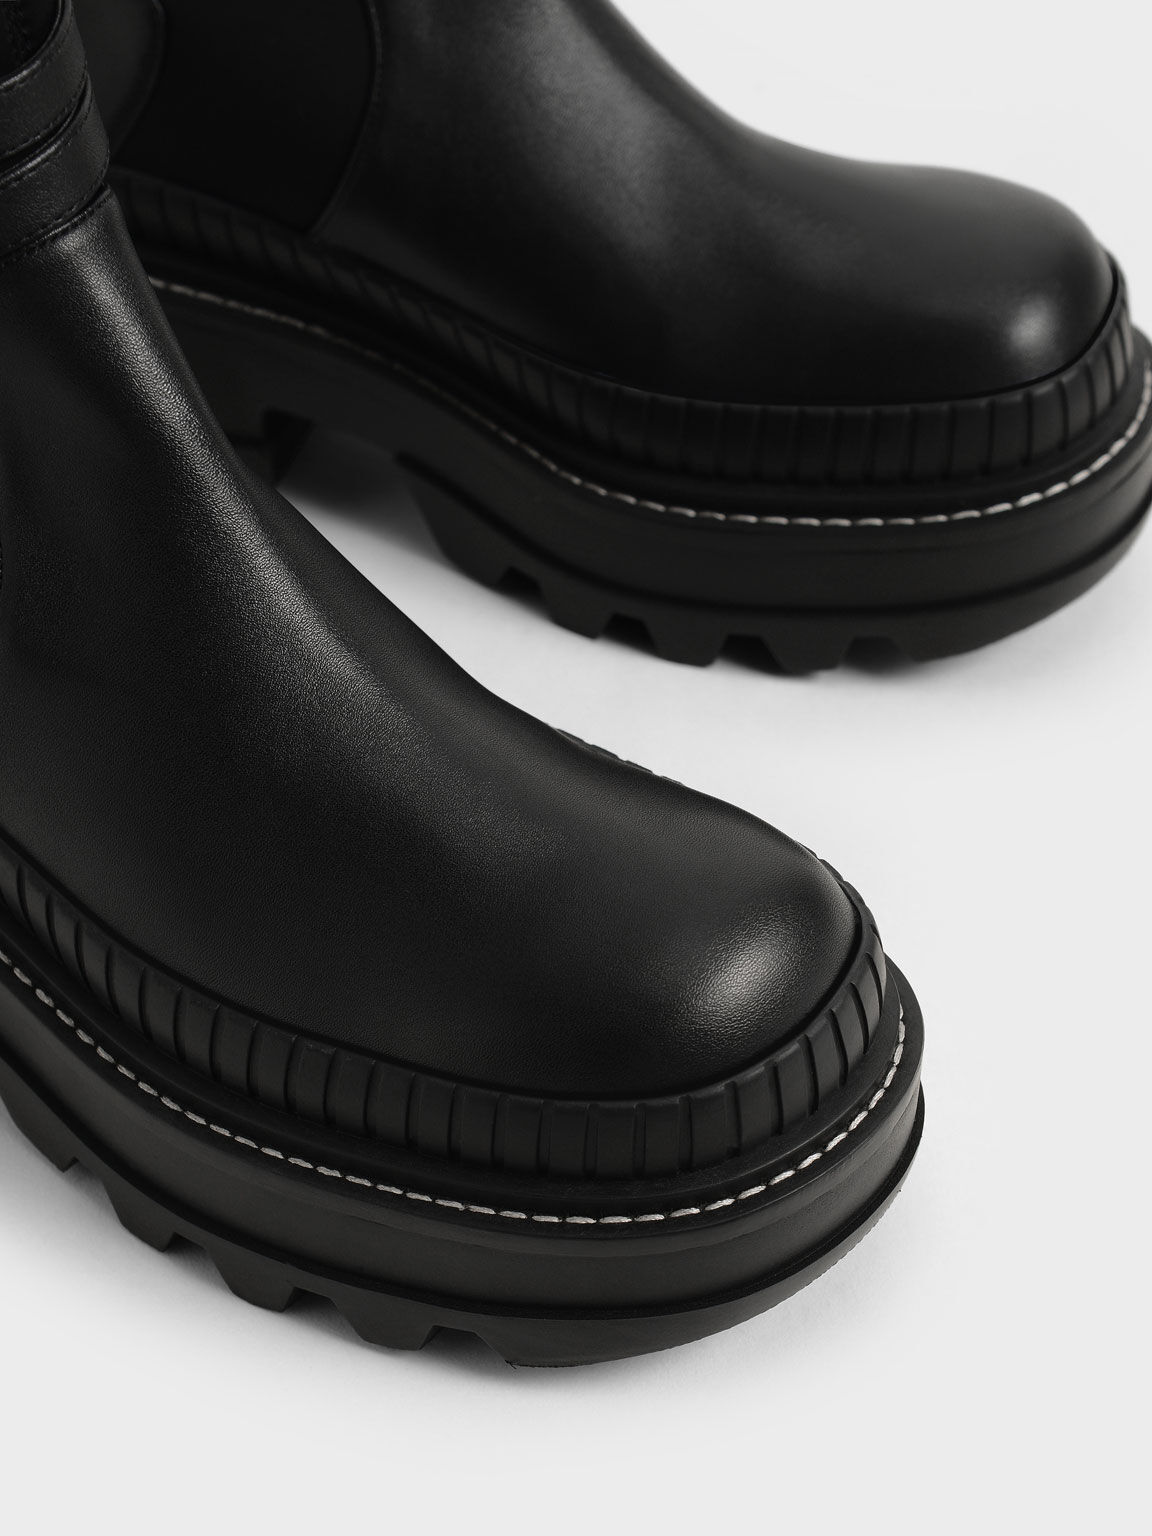 Slip-On Platform Ankle Boots, Black, hi-res